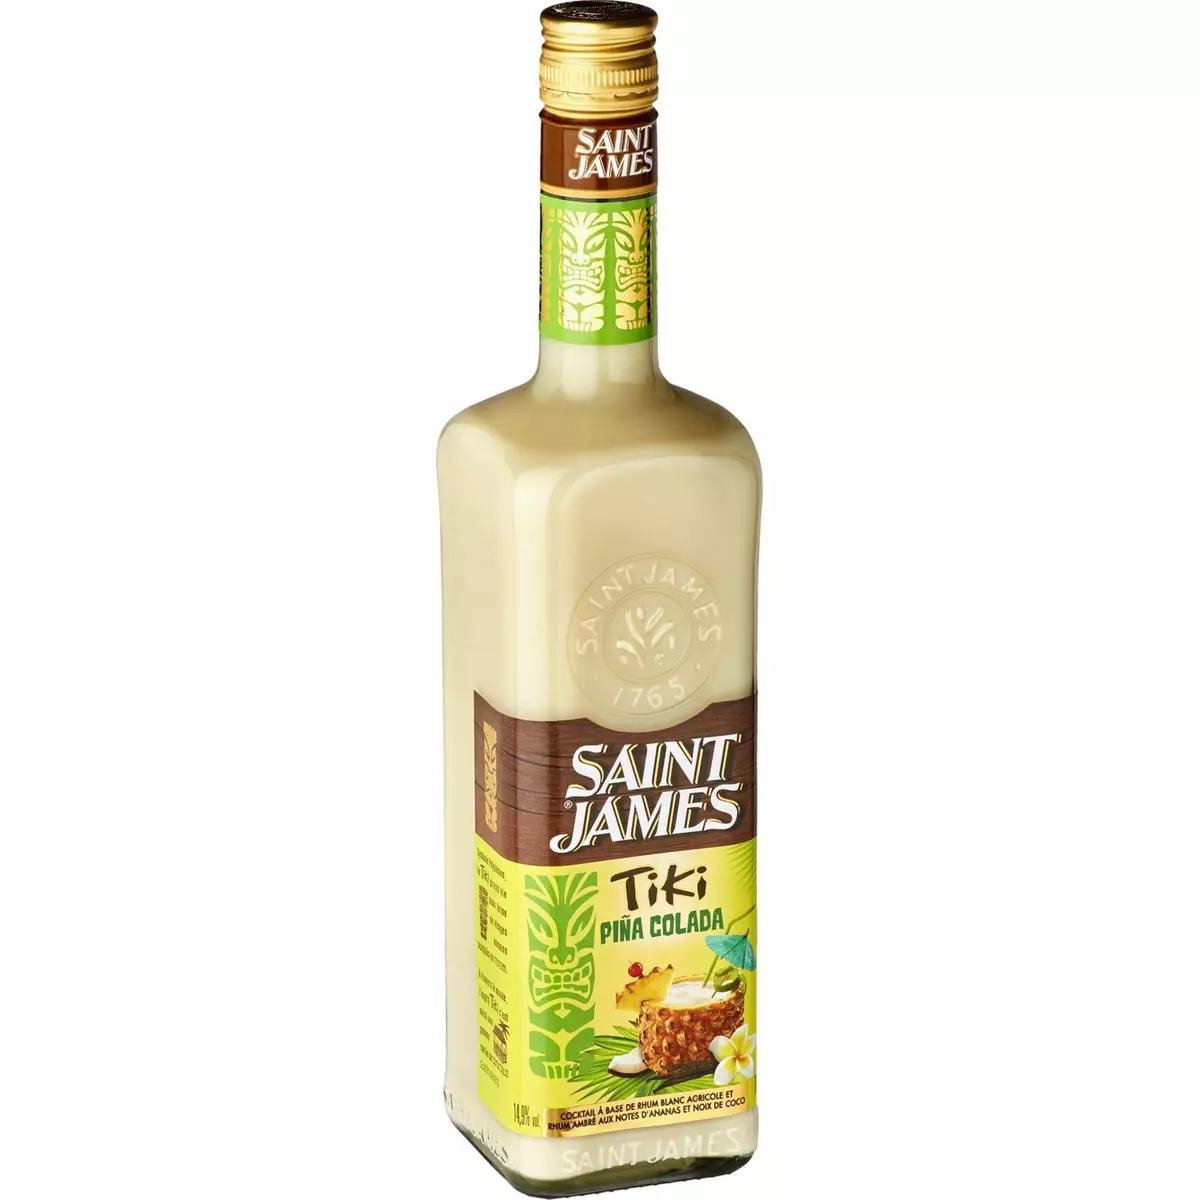 SAINT JAMES Saint james Cocktail tiki pina colada 15% 70cl 70cl